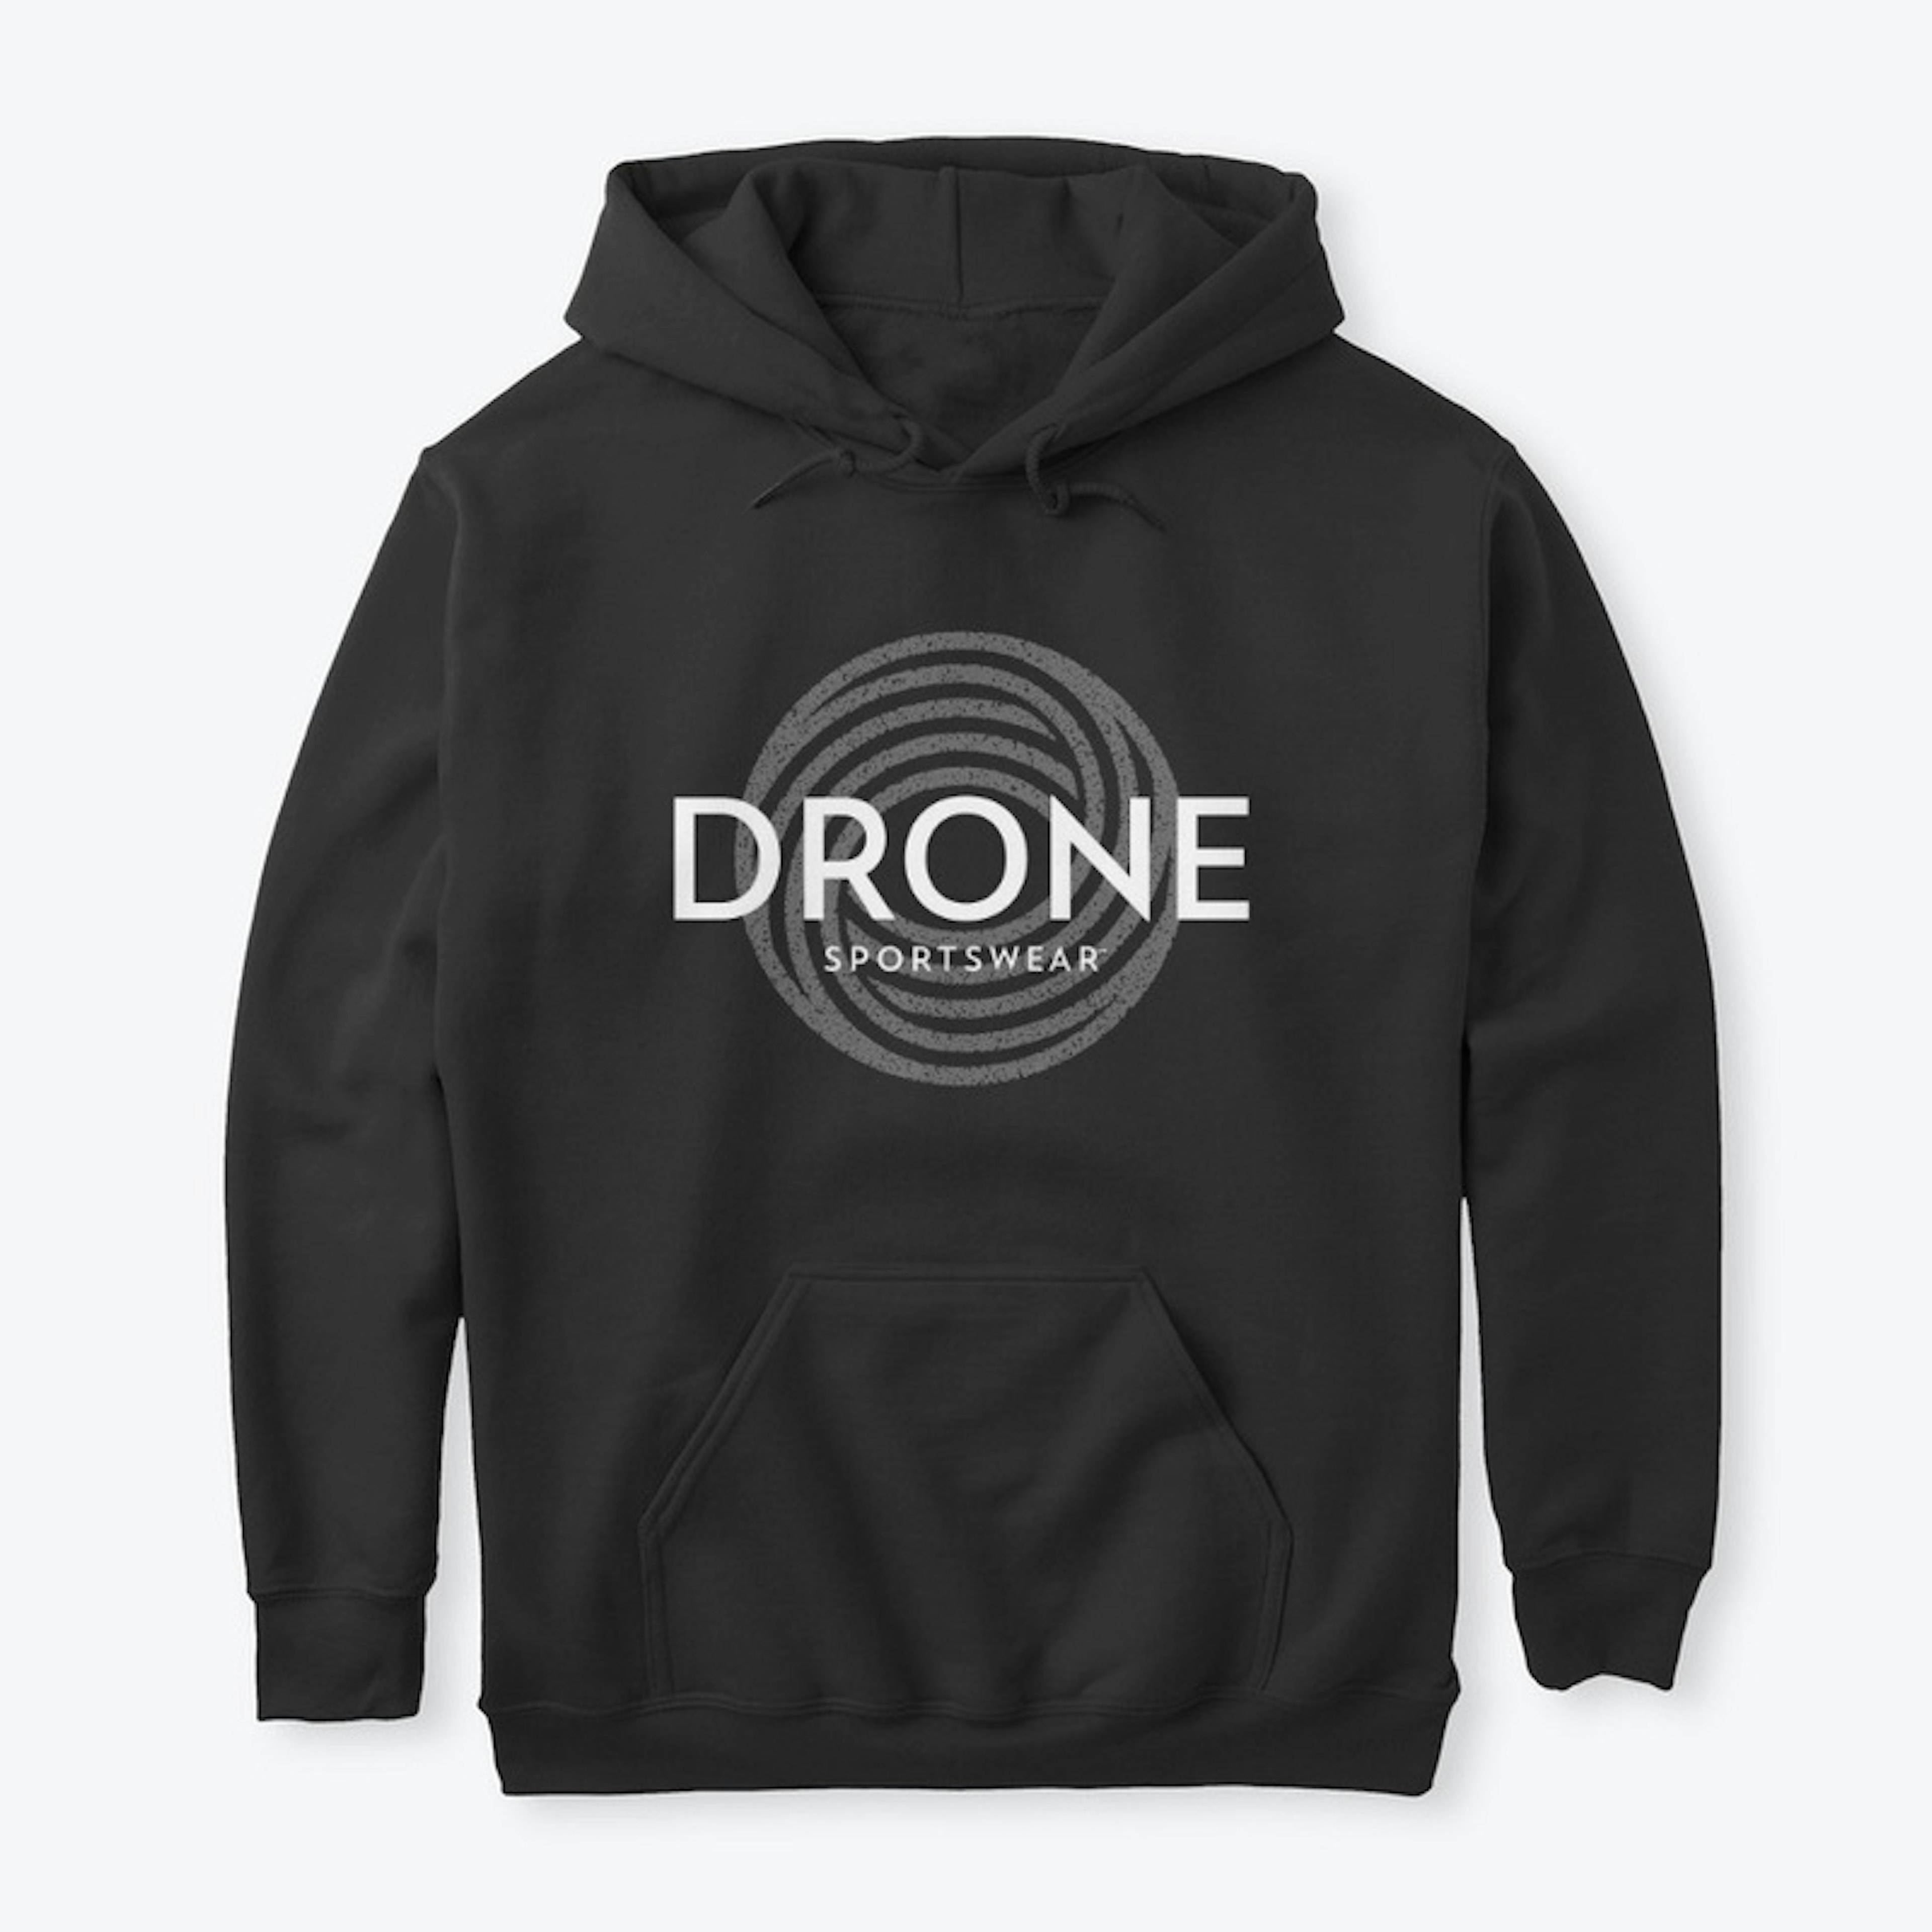 Drone Sportswear Hoodie